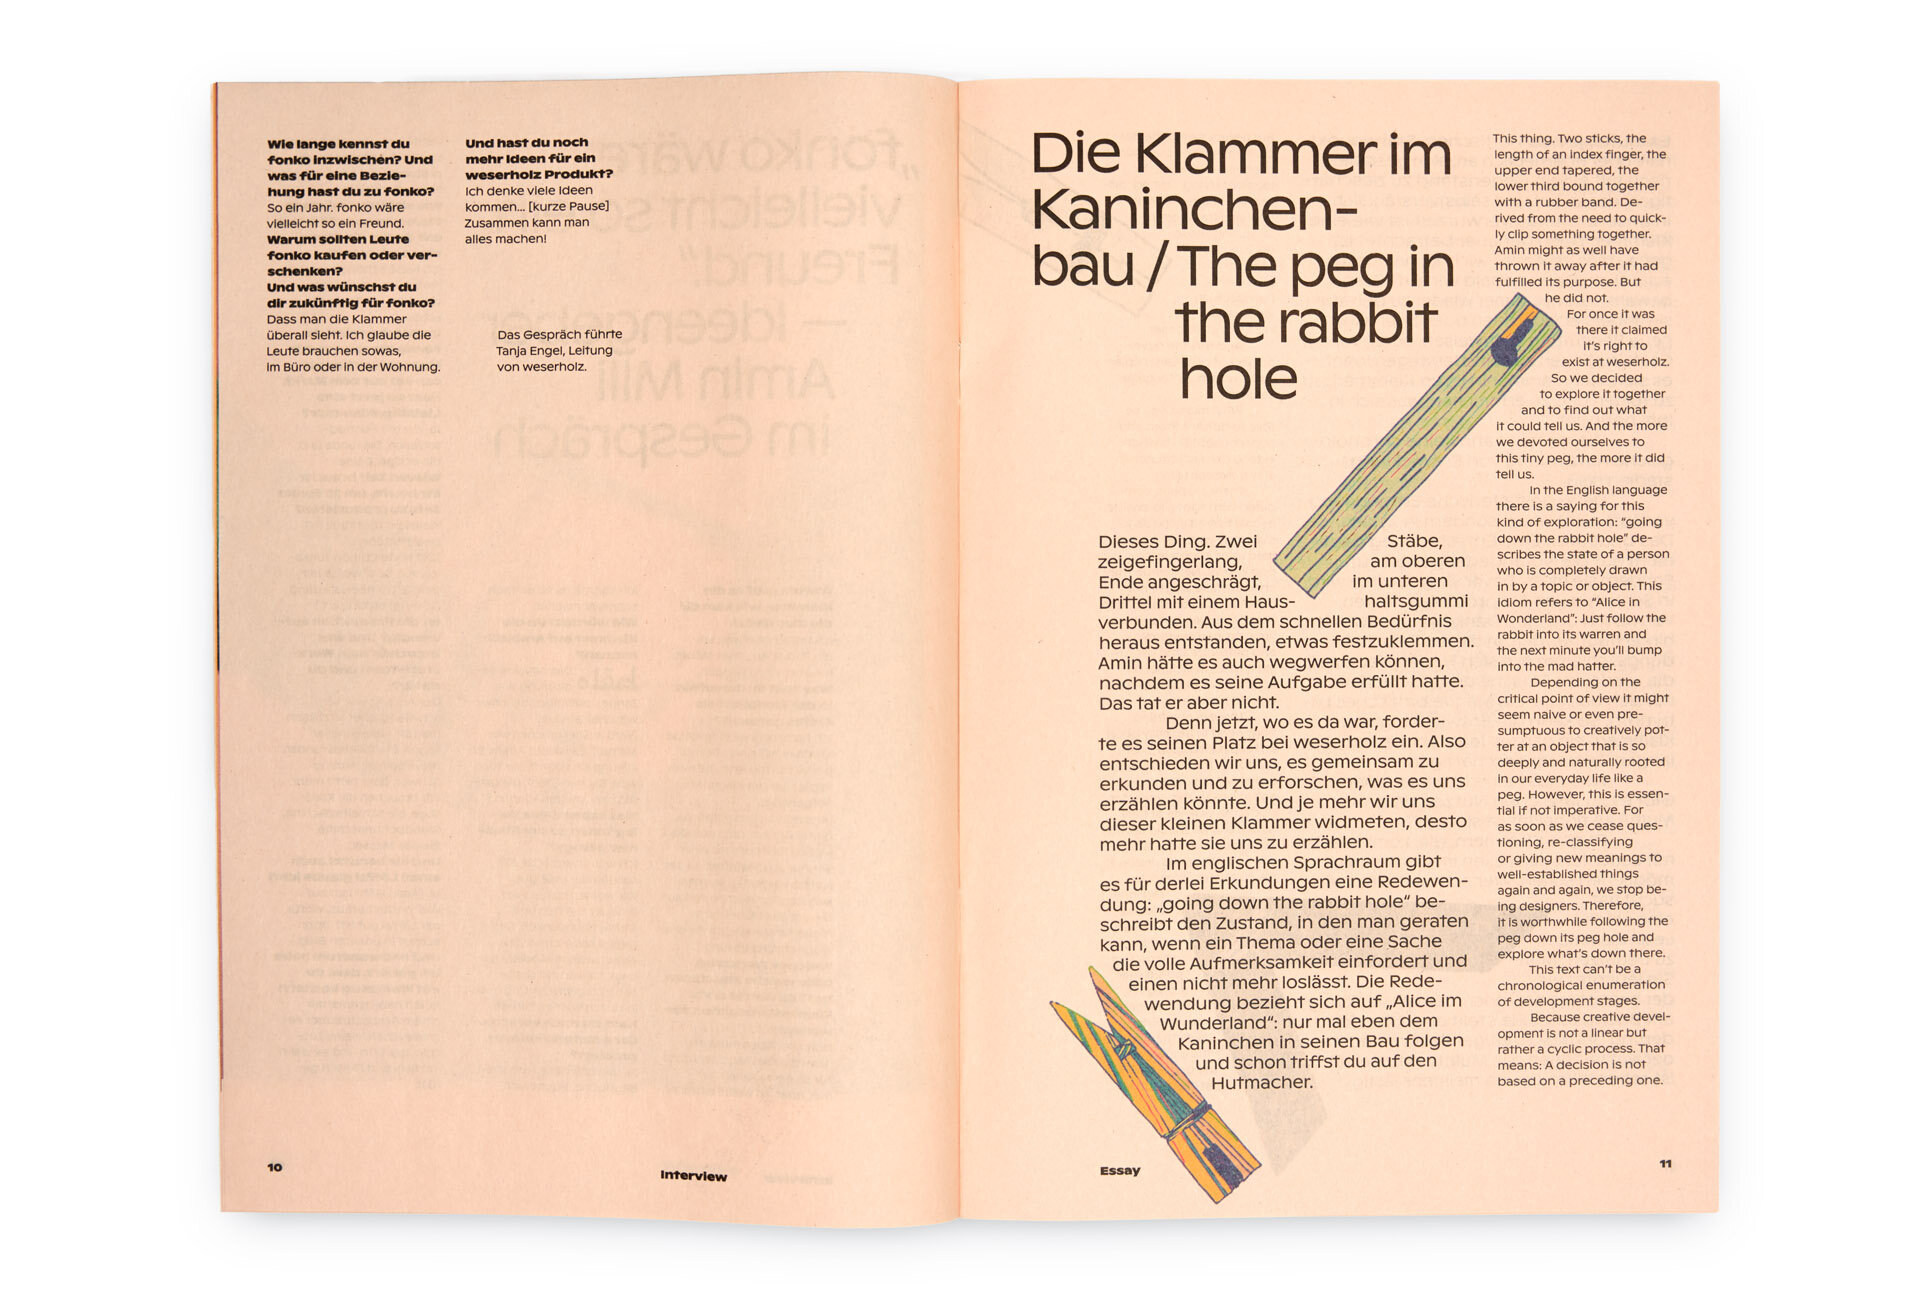  Reproduktion: Doppelseite aus »Bulletin No. 2« von weserholz – Klammerillustrationen 